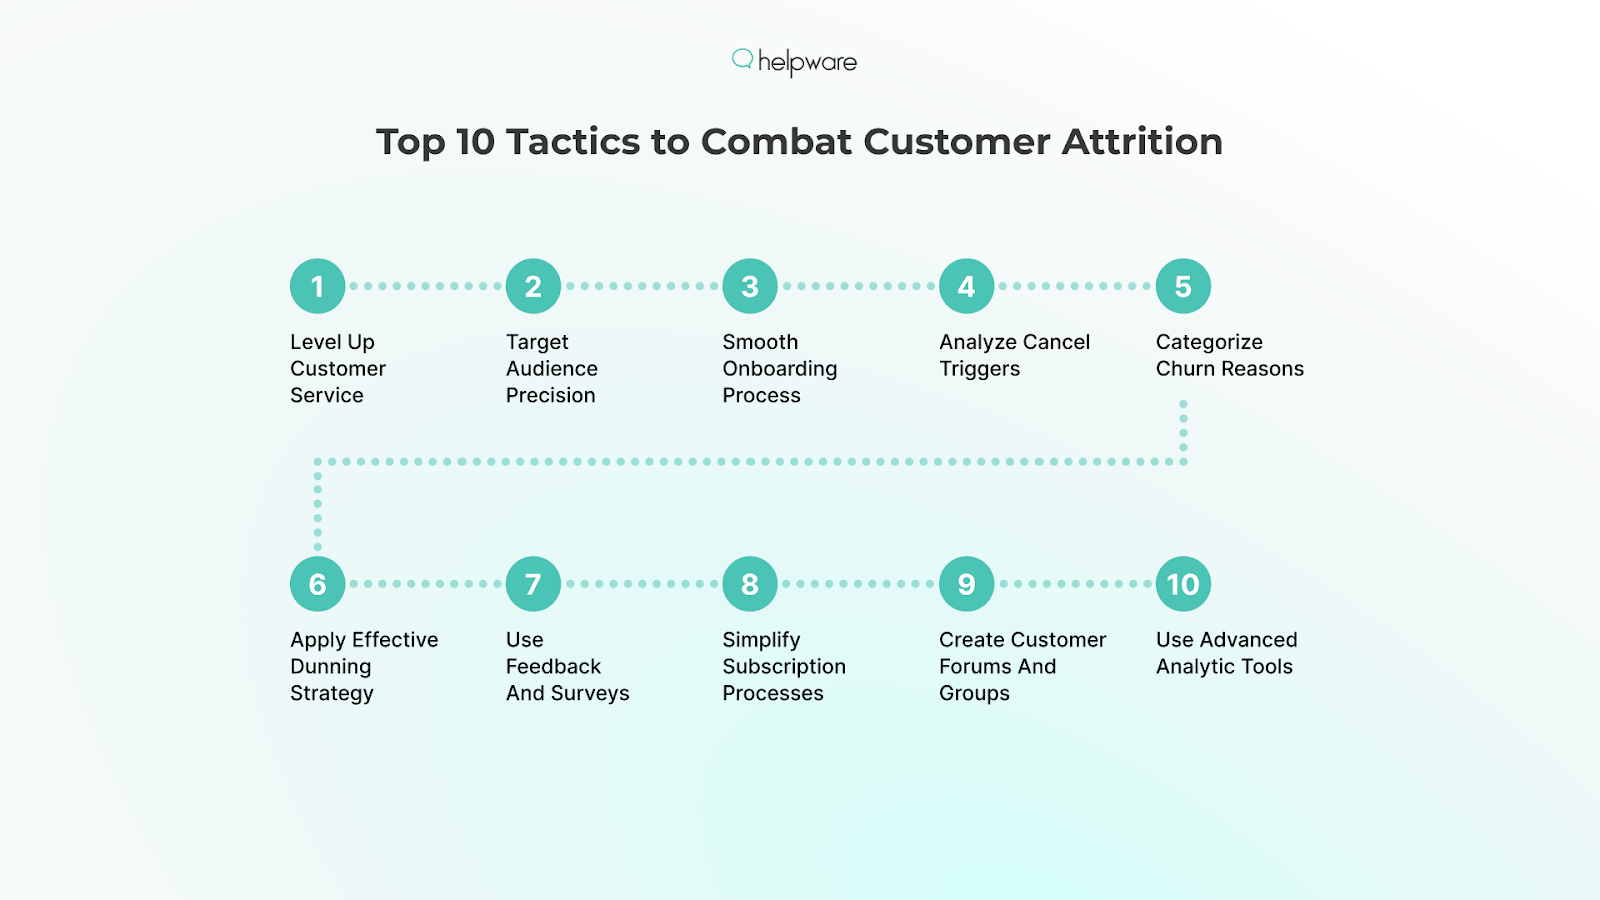 Top 10 Tactics to Combat Customer Attrition